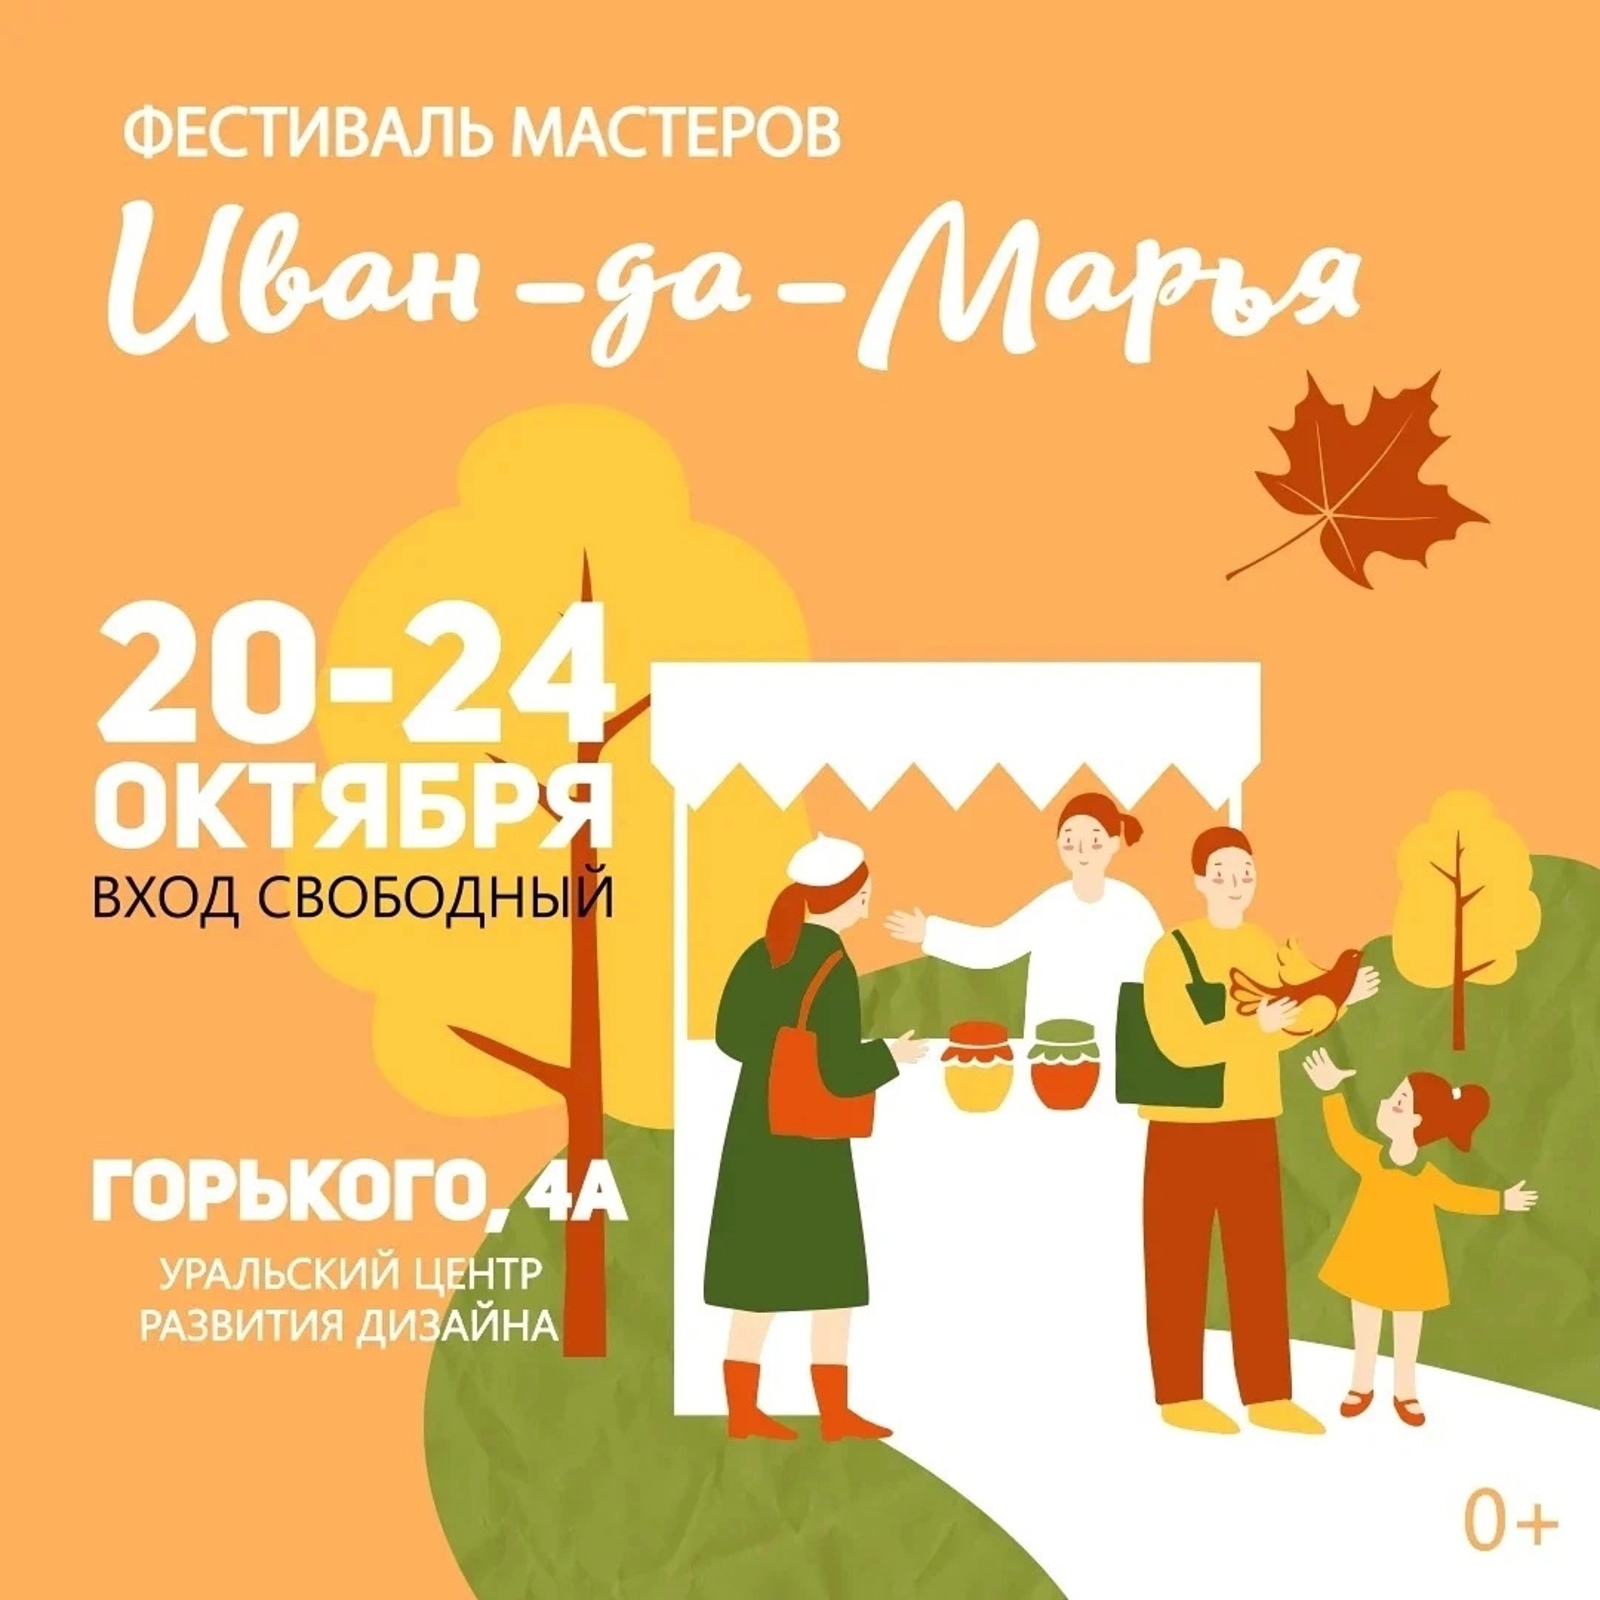 Мастера Башкортостана представят свои работы во Всероссийском фестивале «Иван-да-Марья»